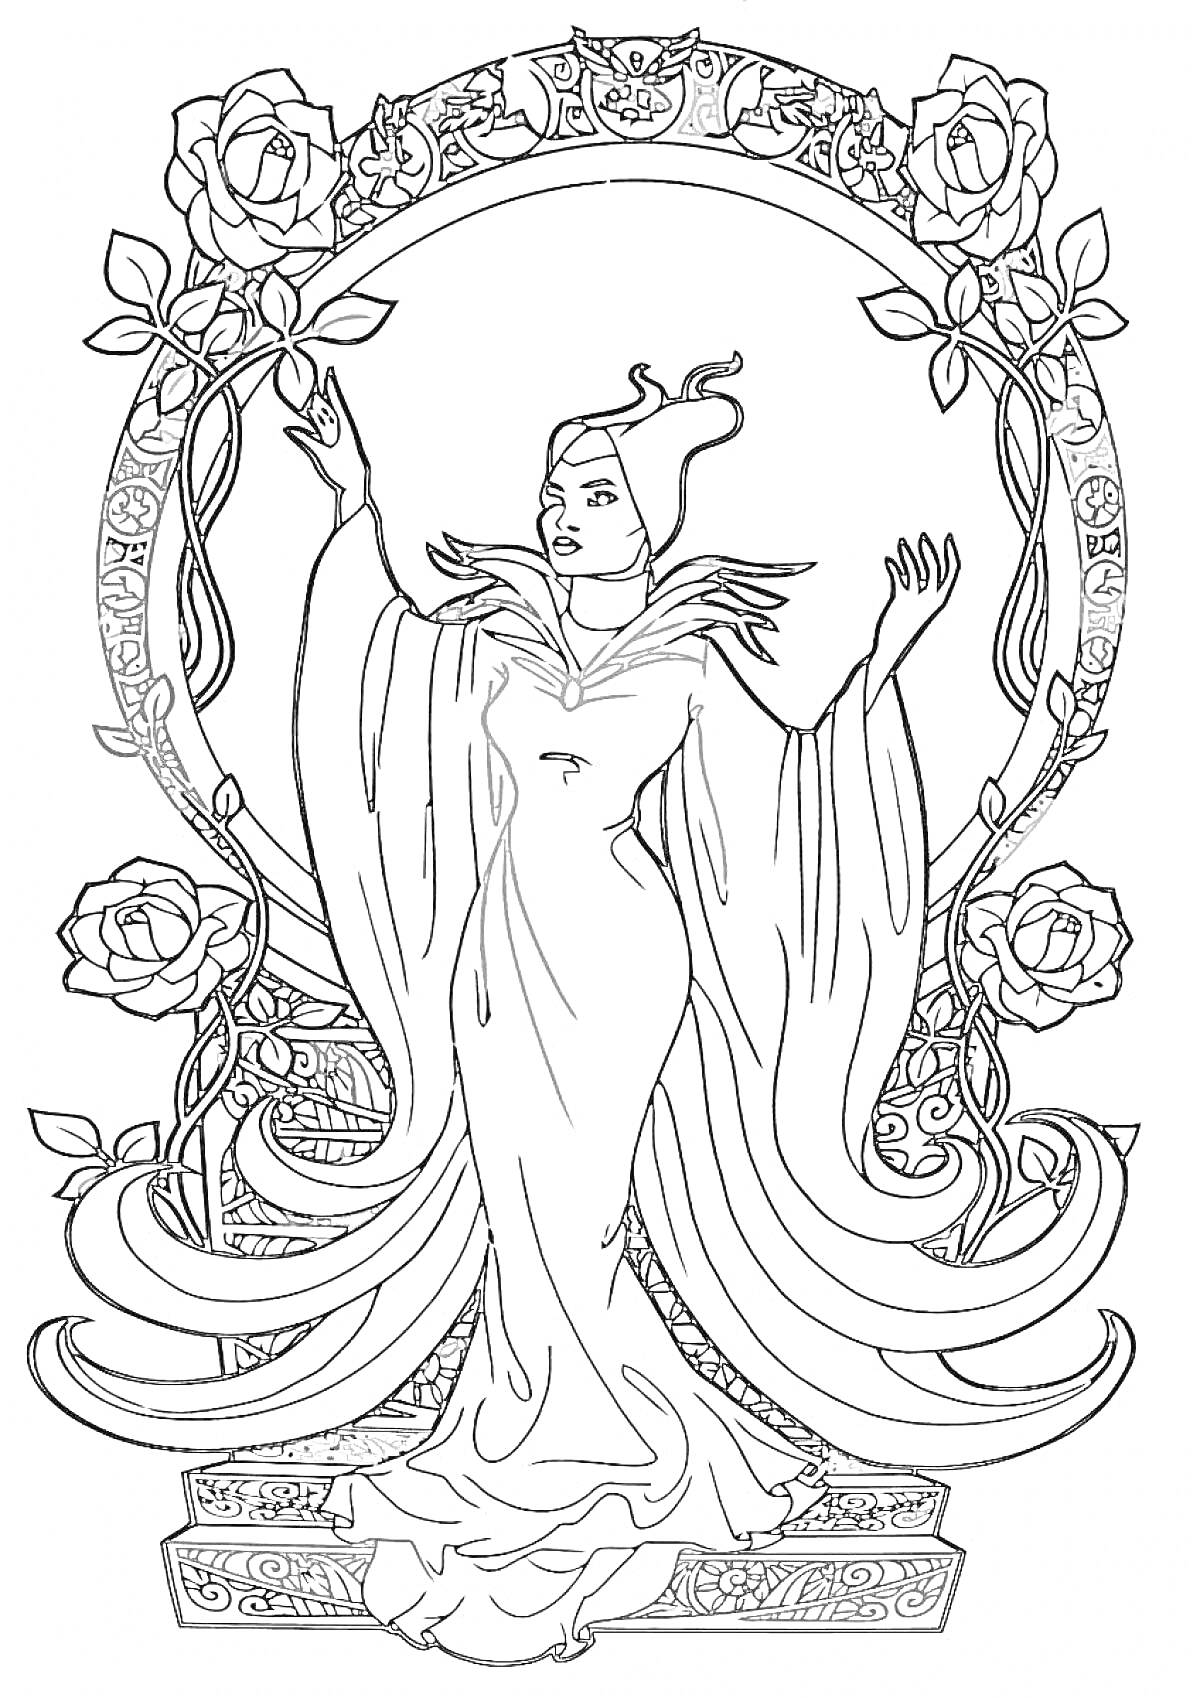 Раскраска Малефисента в длинном платье на фоне украшенного цветами круглого орнамента